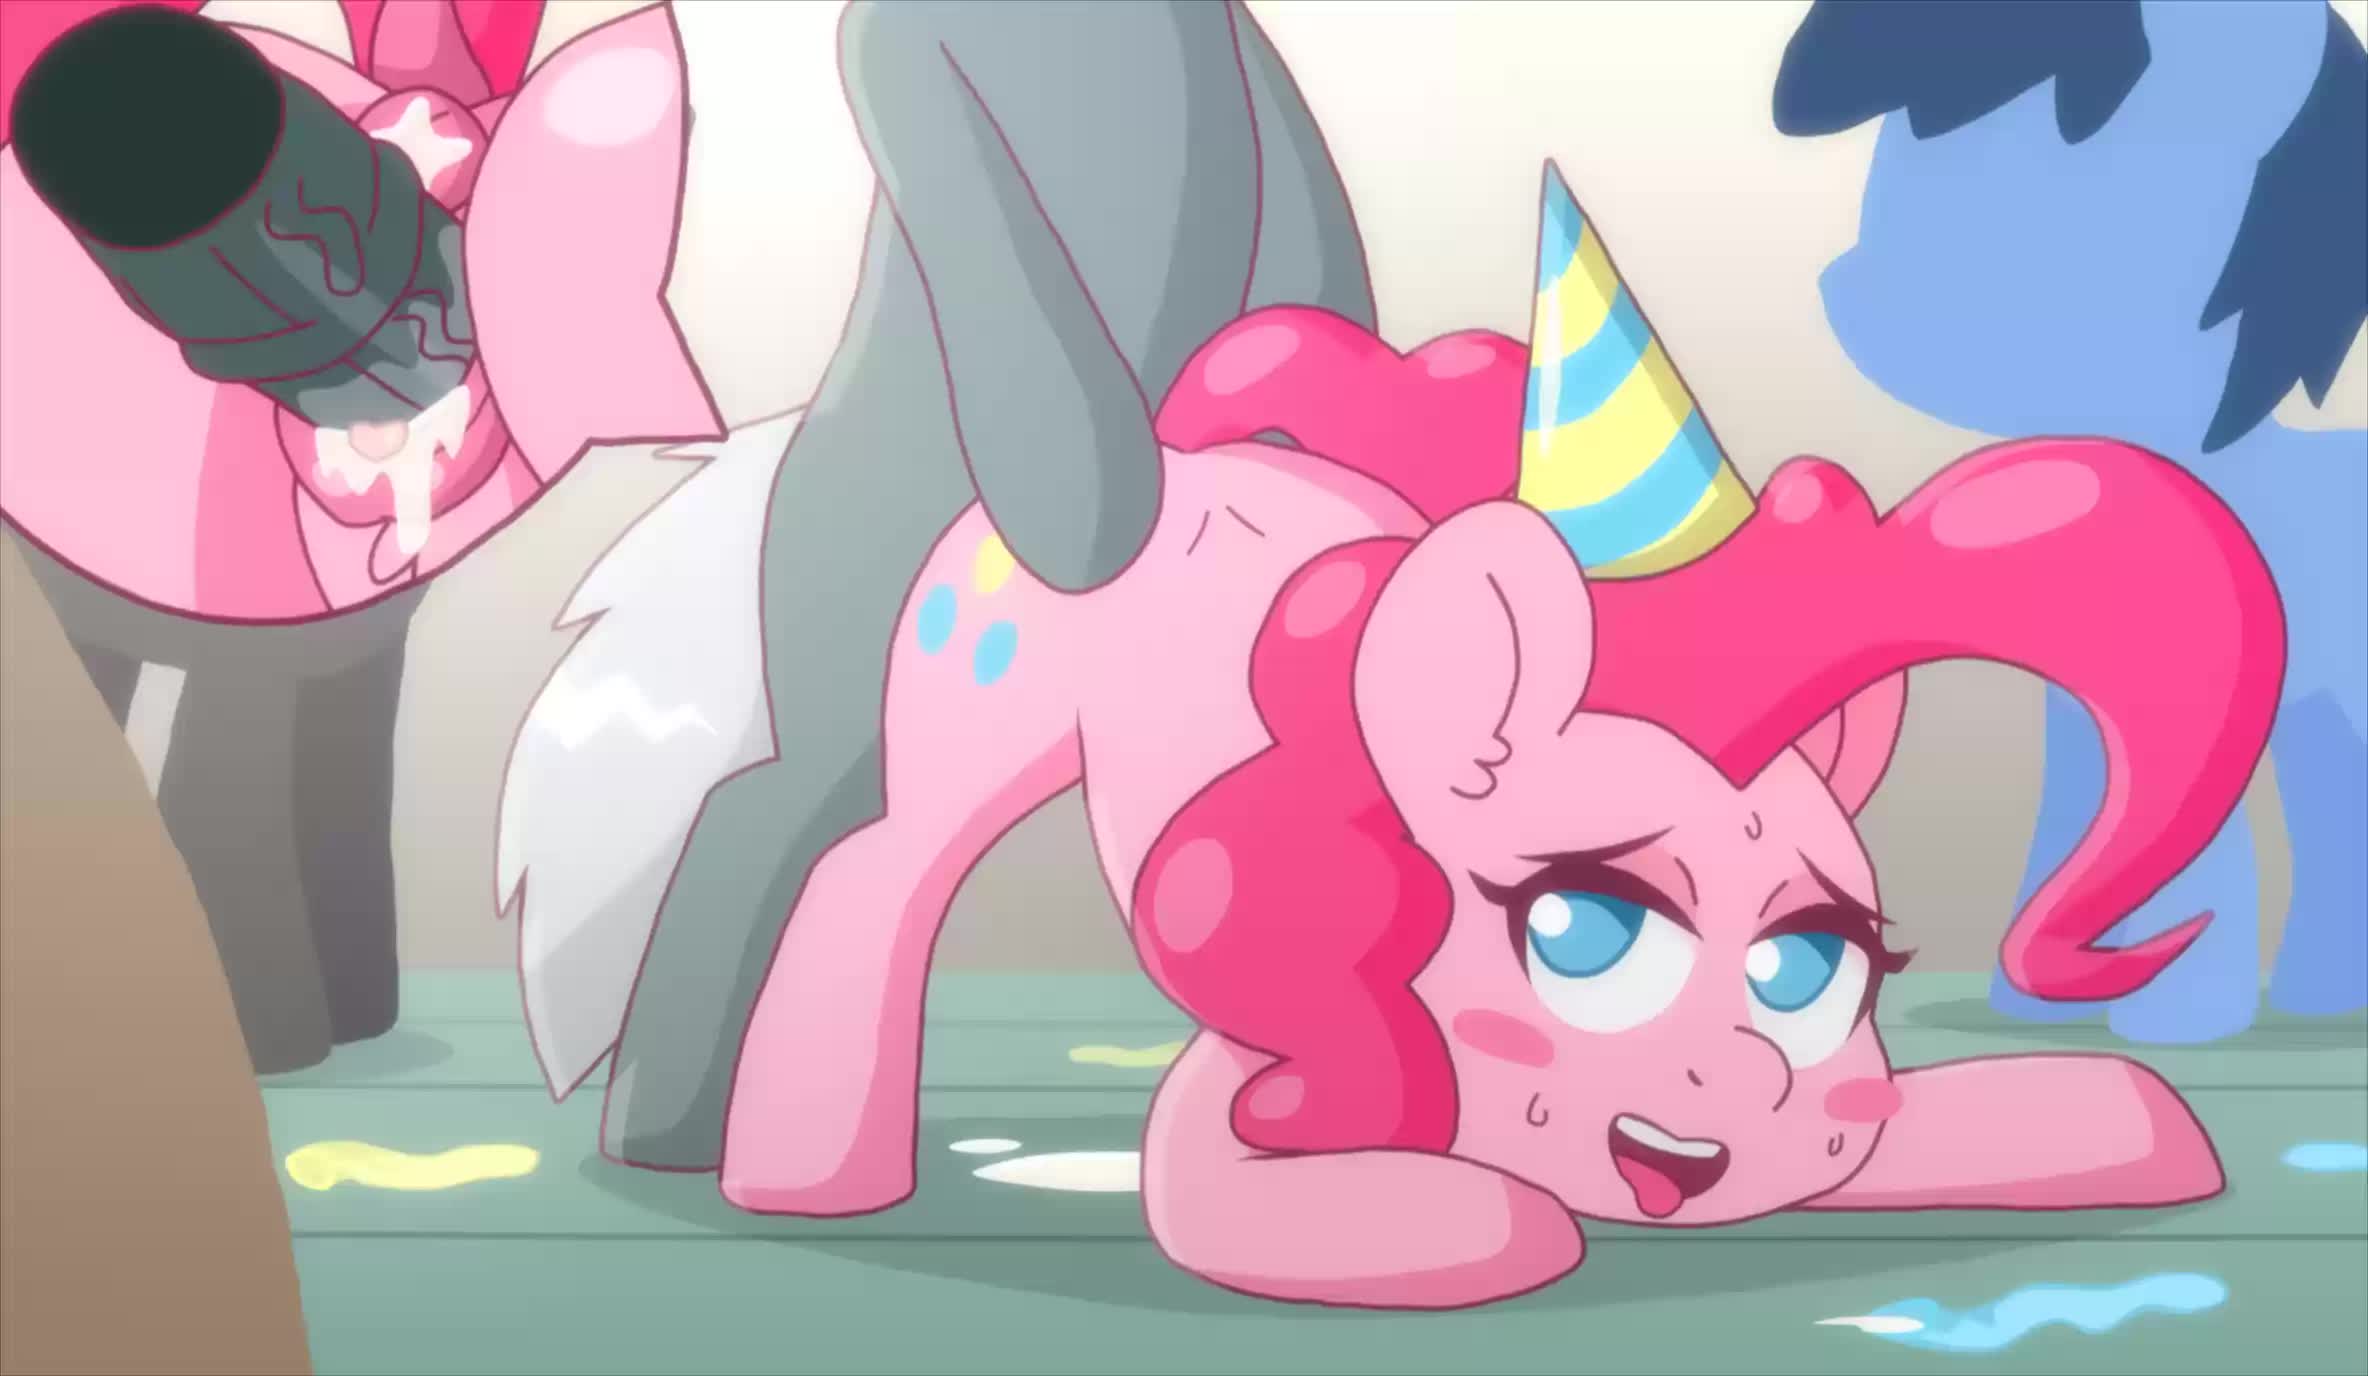 Animated My_Little_Pony_Friendship_Is_Magic Pinkie_Pie omegaozone webm // 2368x1376 // 201.6KB // webm